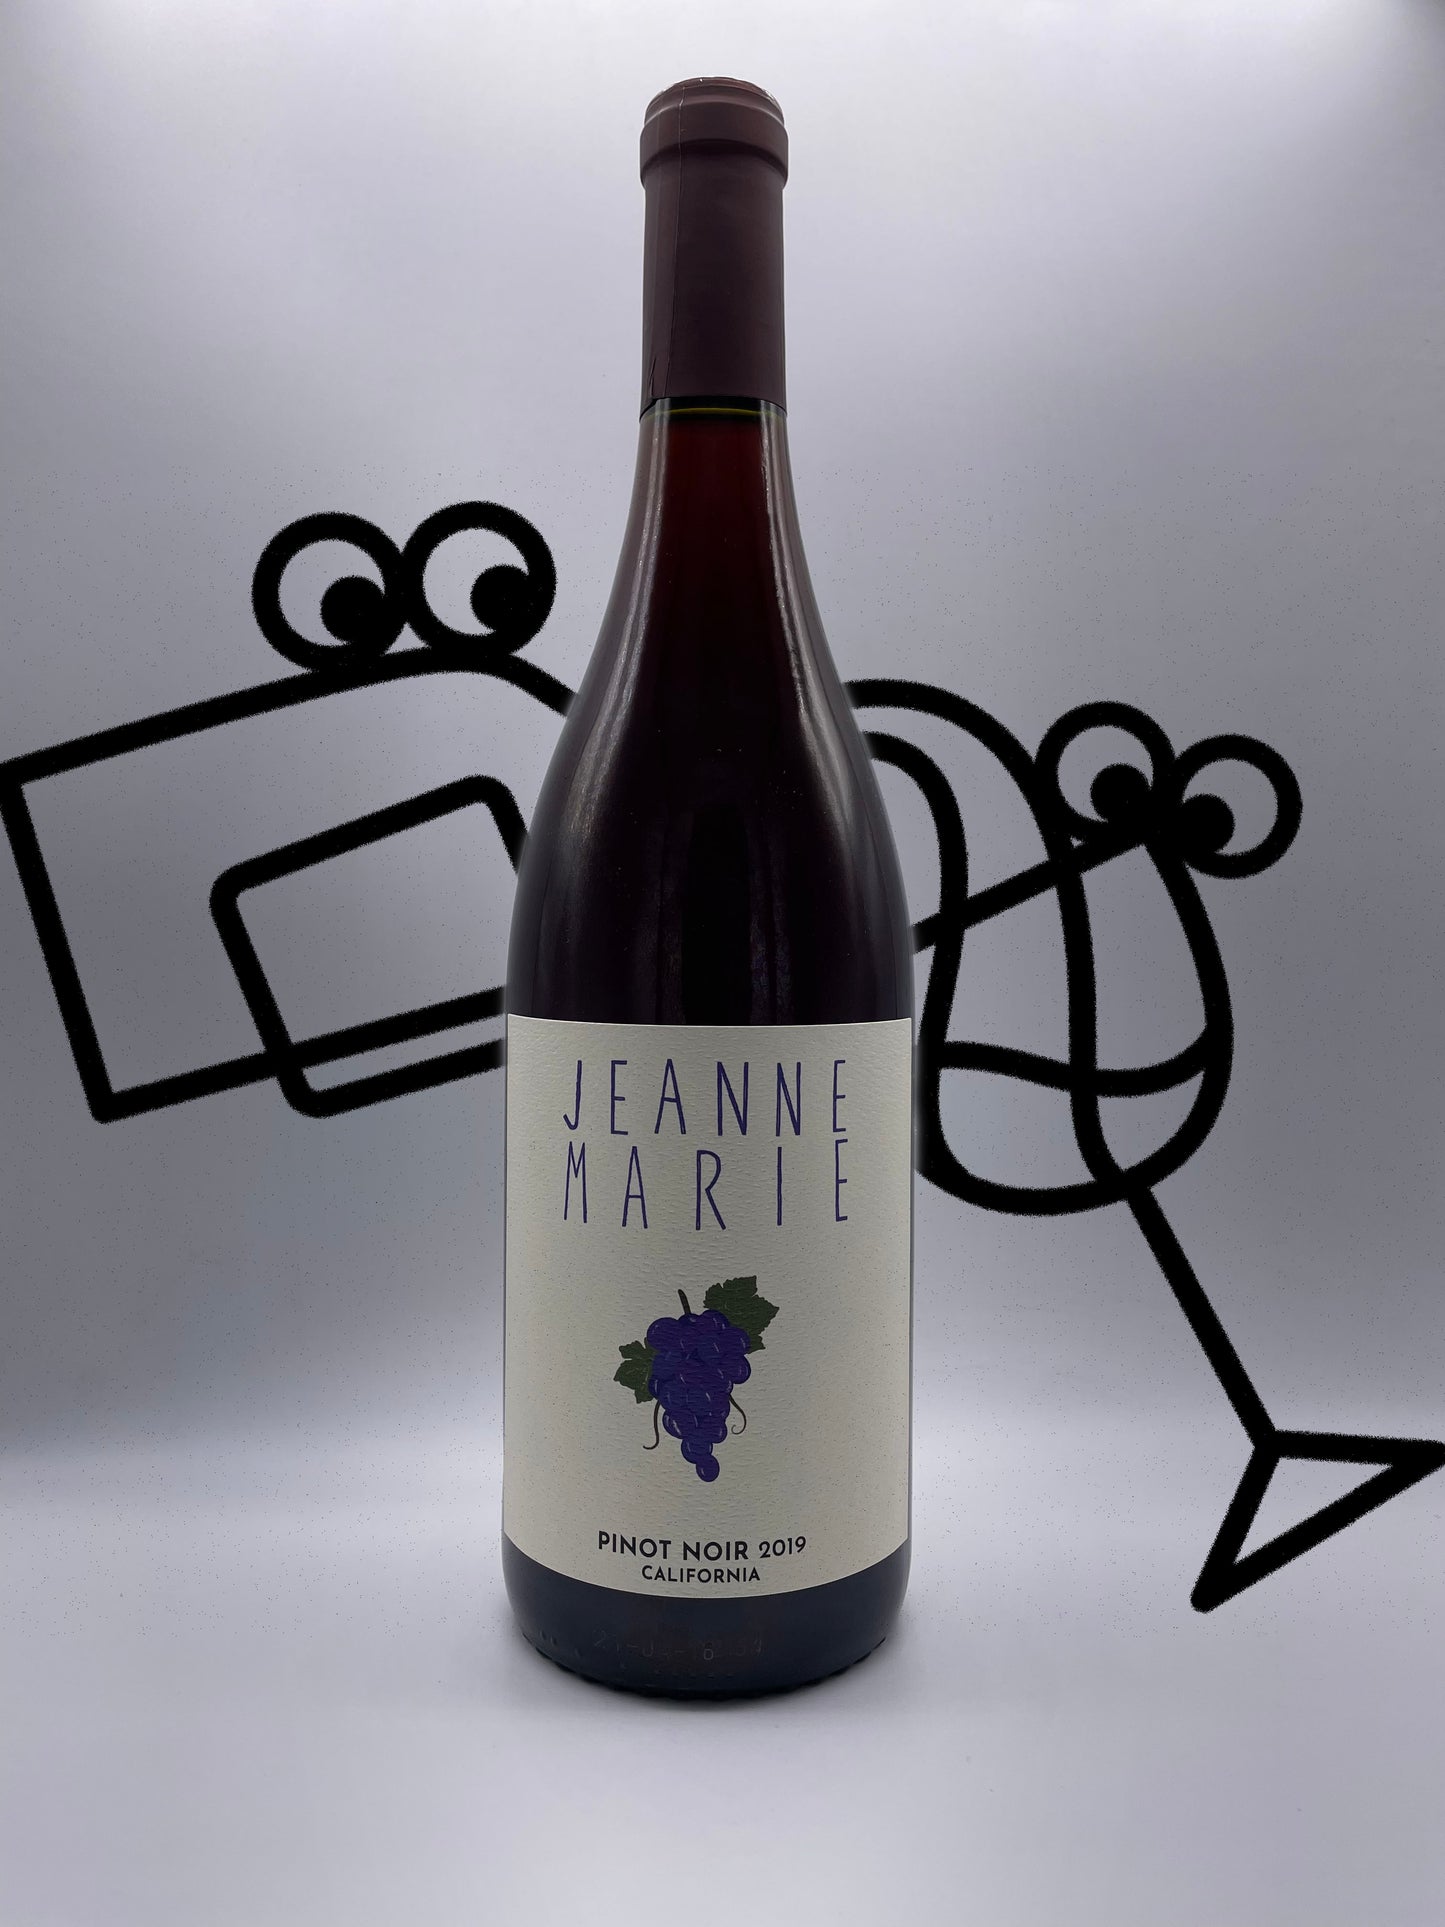 Jeanne Marie Pinot Noir 2019 California Williston Park Wines